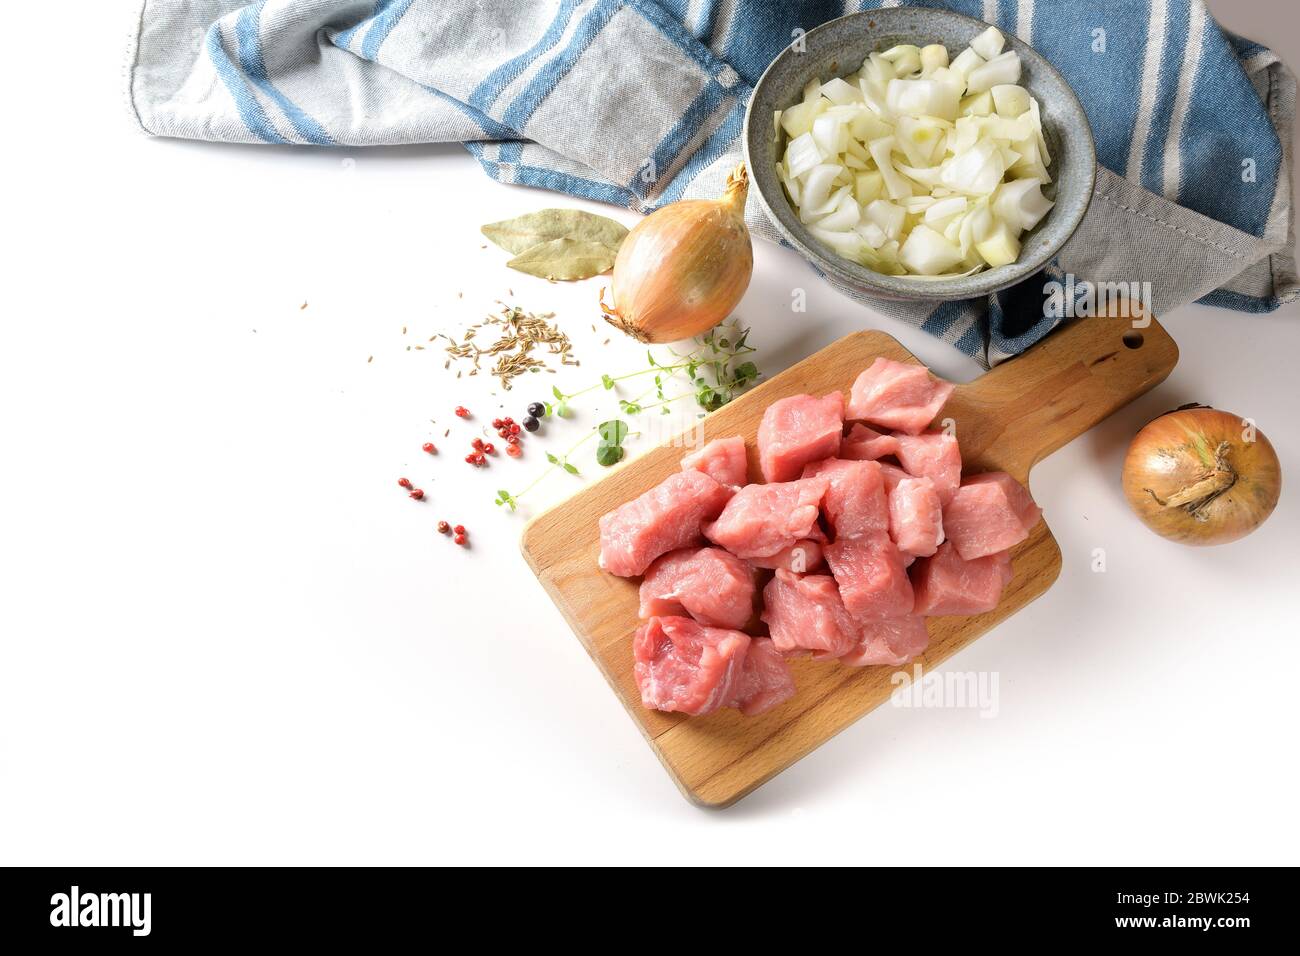 Morceaux de viande de porc crus, oignons, herbes et épices, ingrédients de cuisine pour un ragoût savoureux, goulash ou ragoût, sur un plan de cuisine, isolé sur une cose blanche Banque D'Images